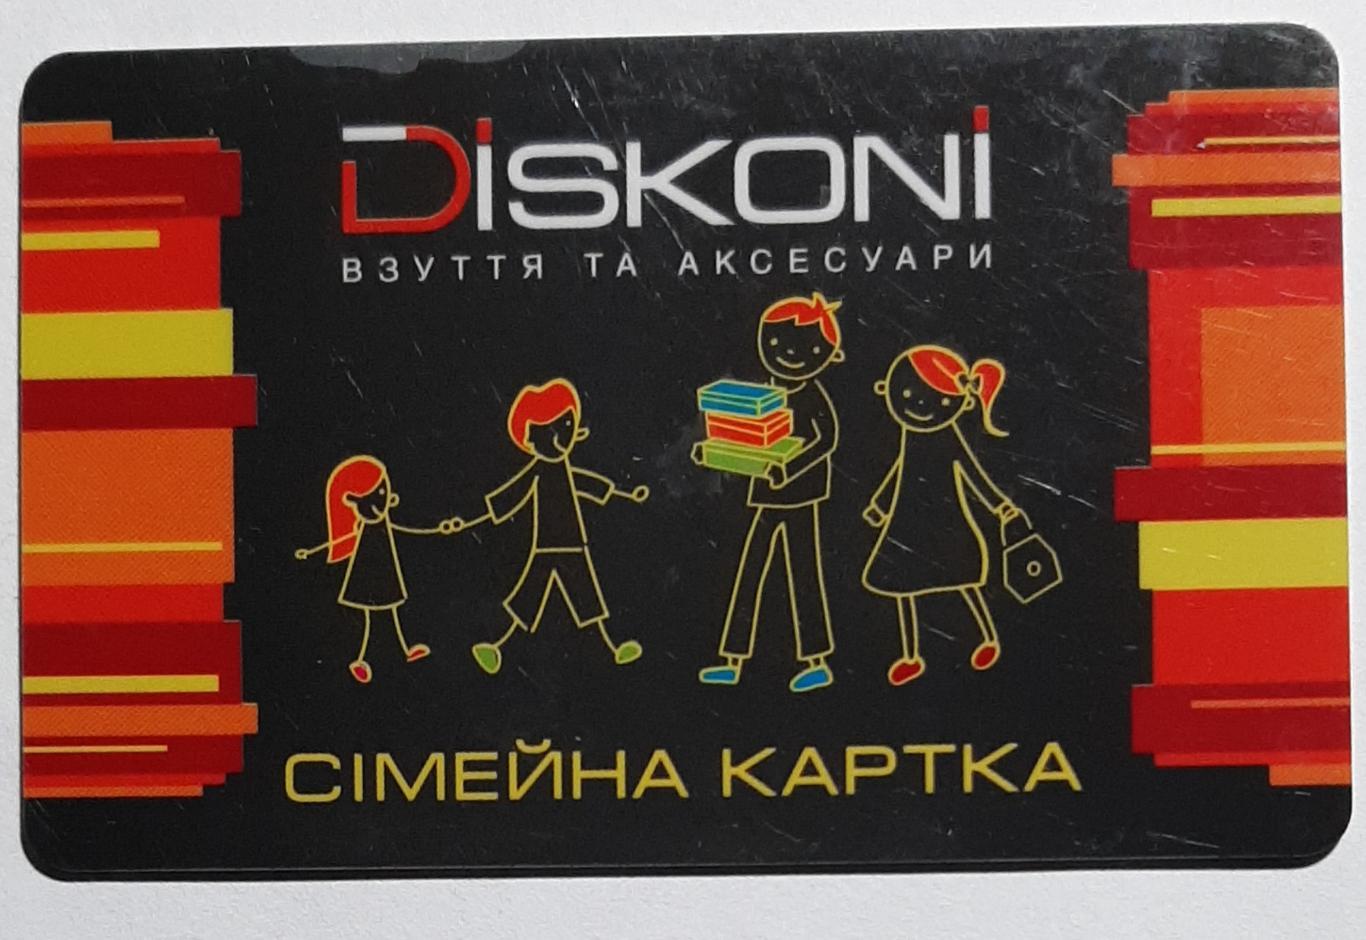 Дисконтна картка Diskoni